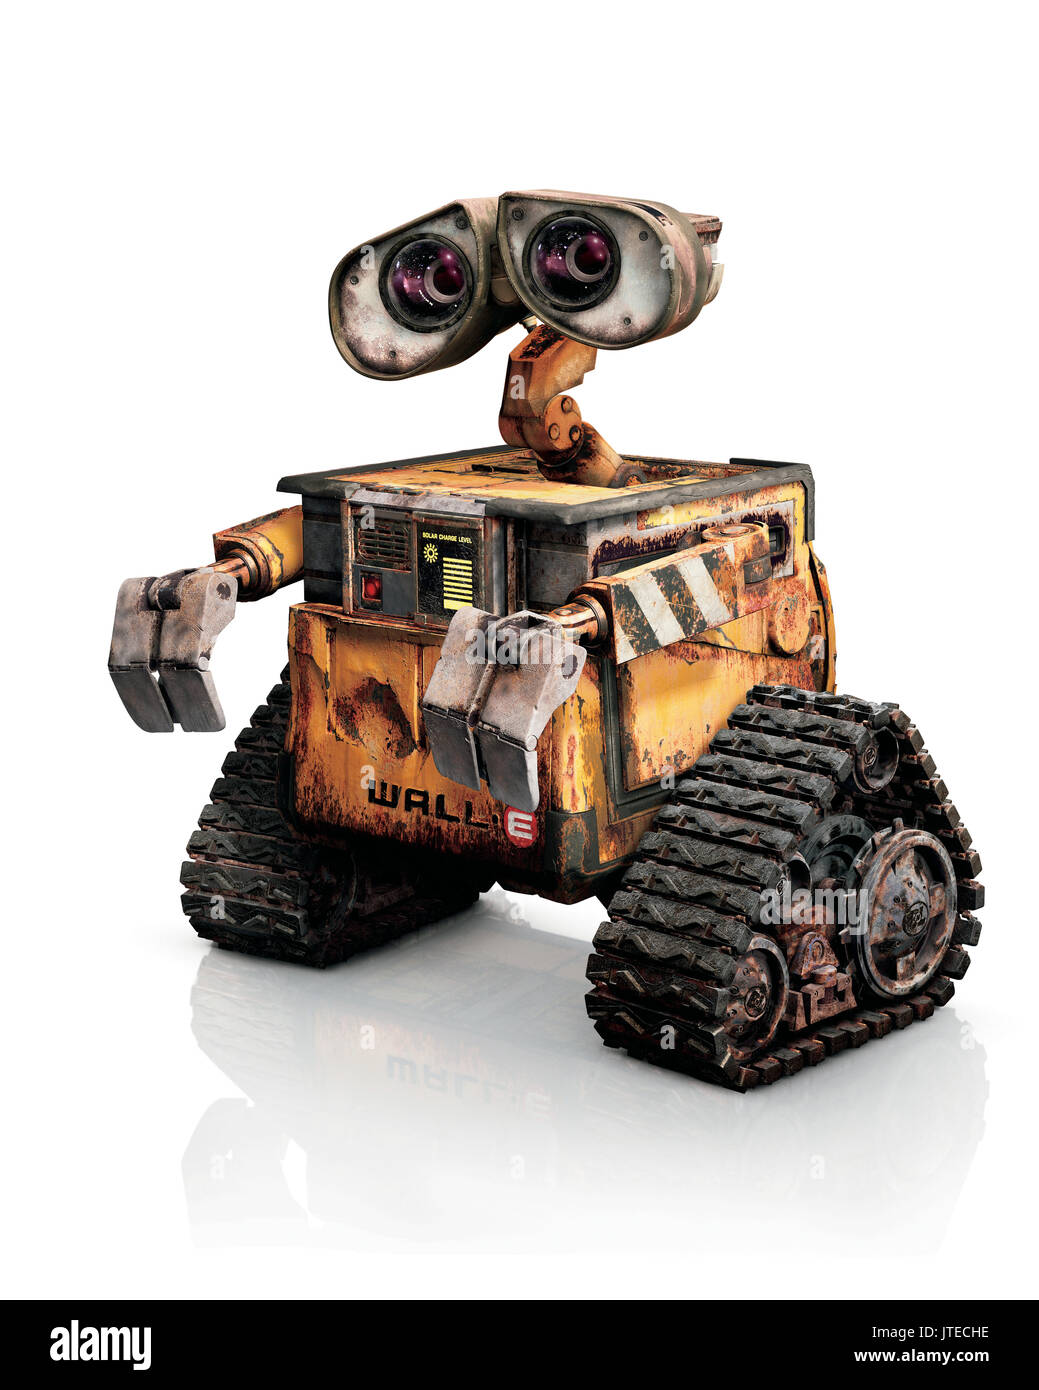 WALL·E THE ROBOT WALL·E; WALL.E; WALL E (2008 Stock Photo - Alamy